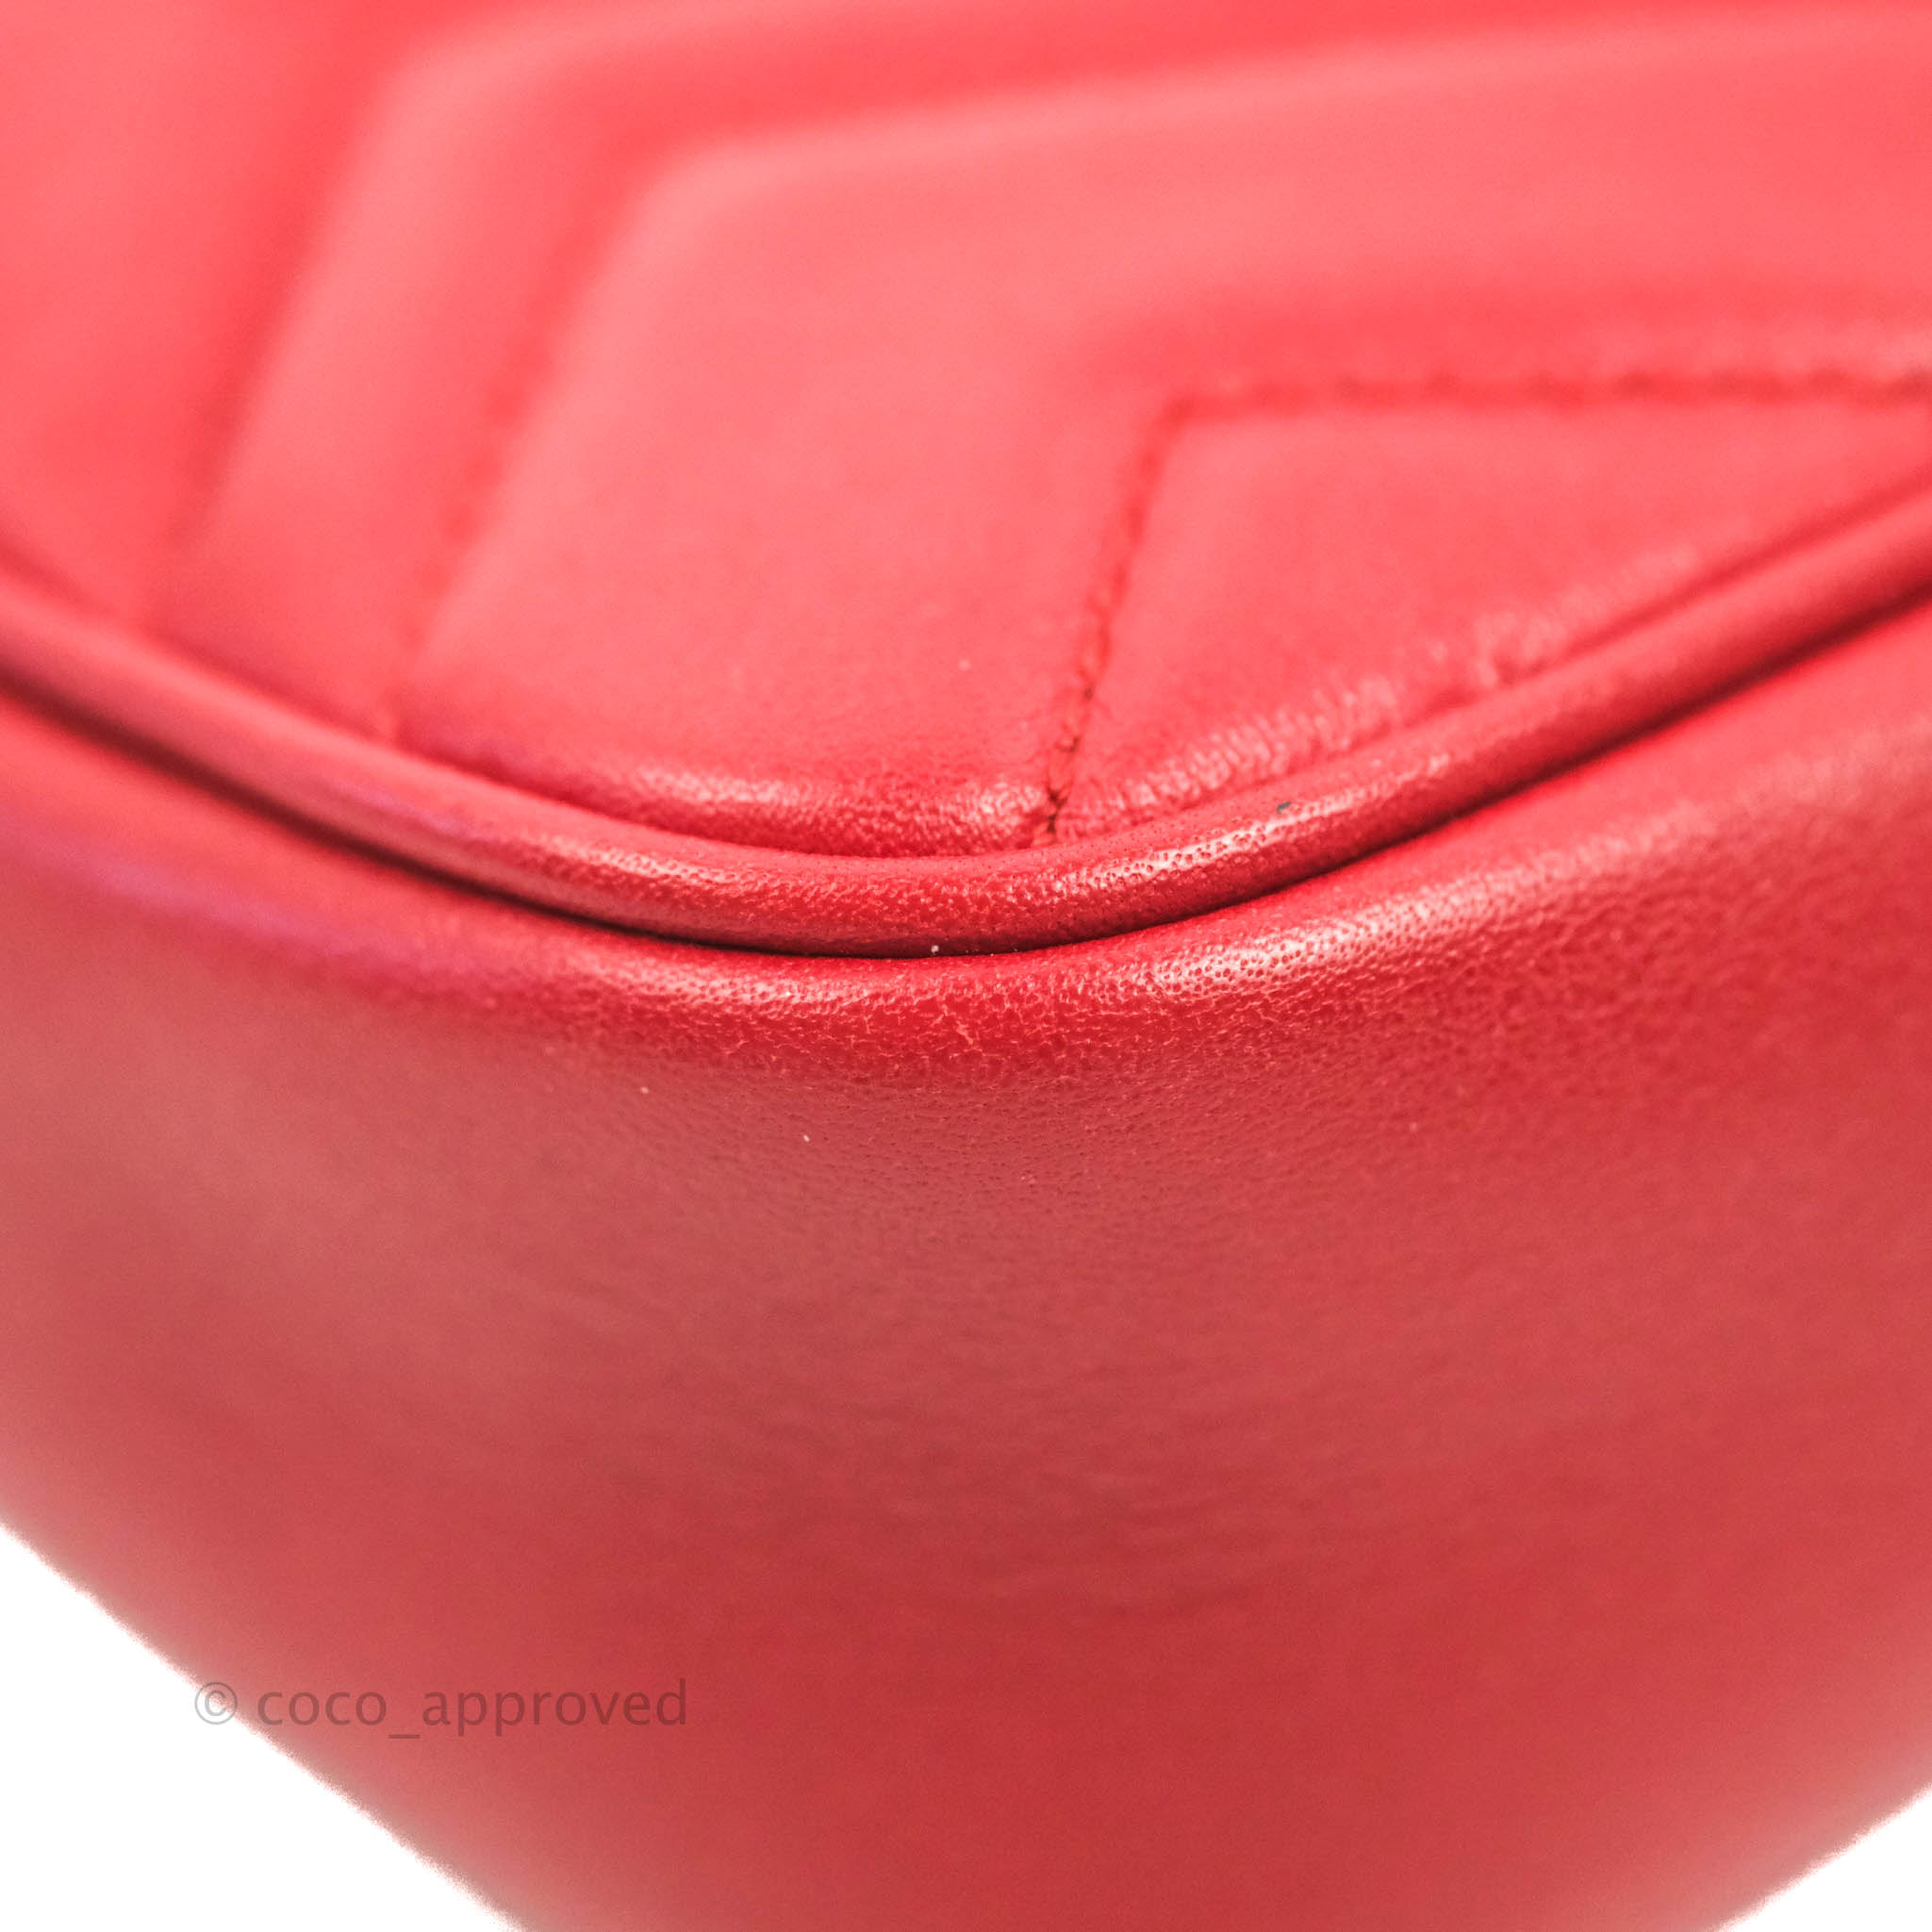 Gucci Red GG Marmont Super Mini Bag – The Closet